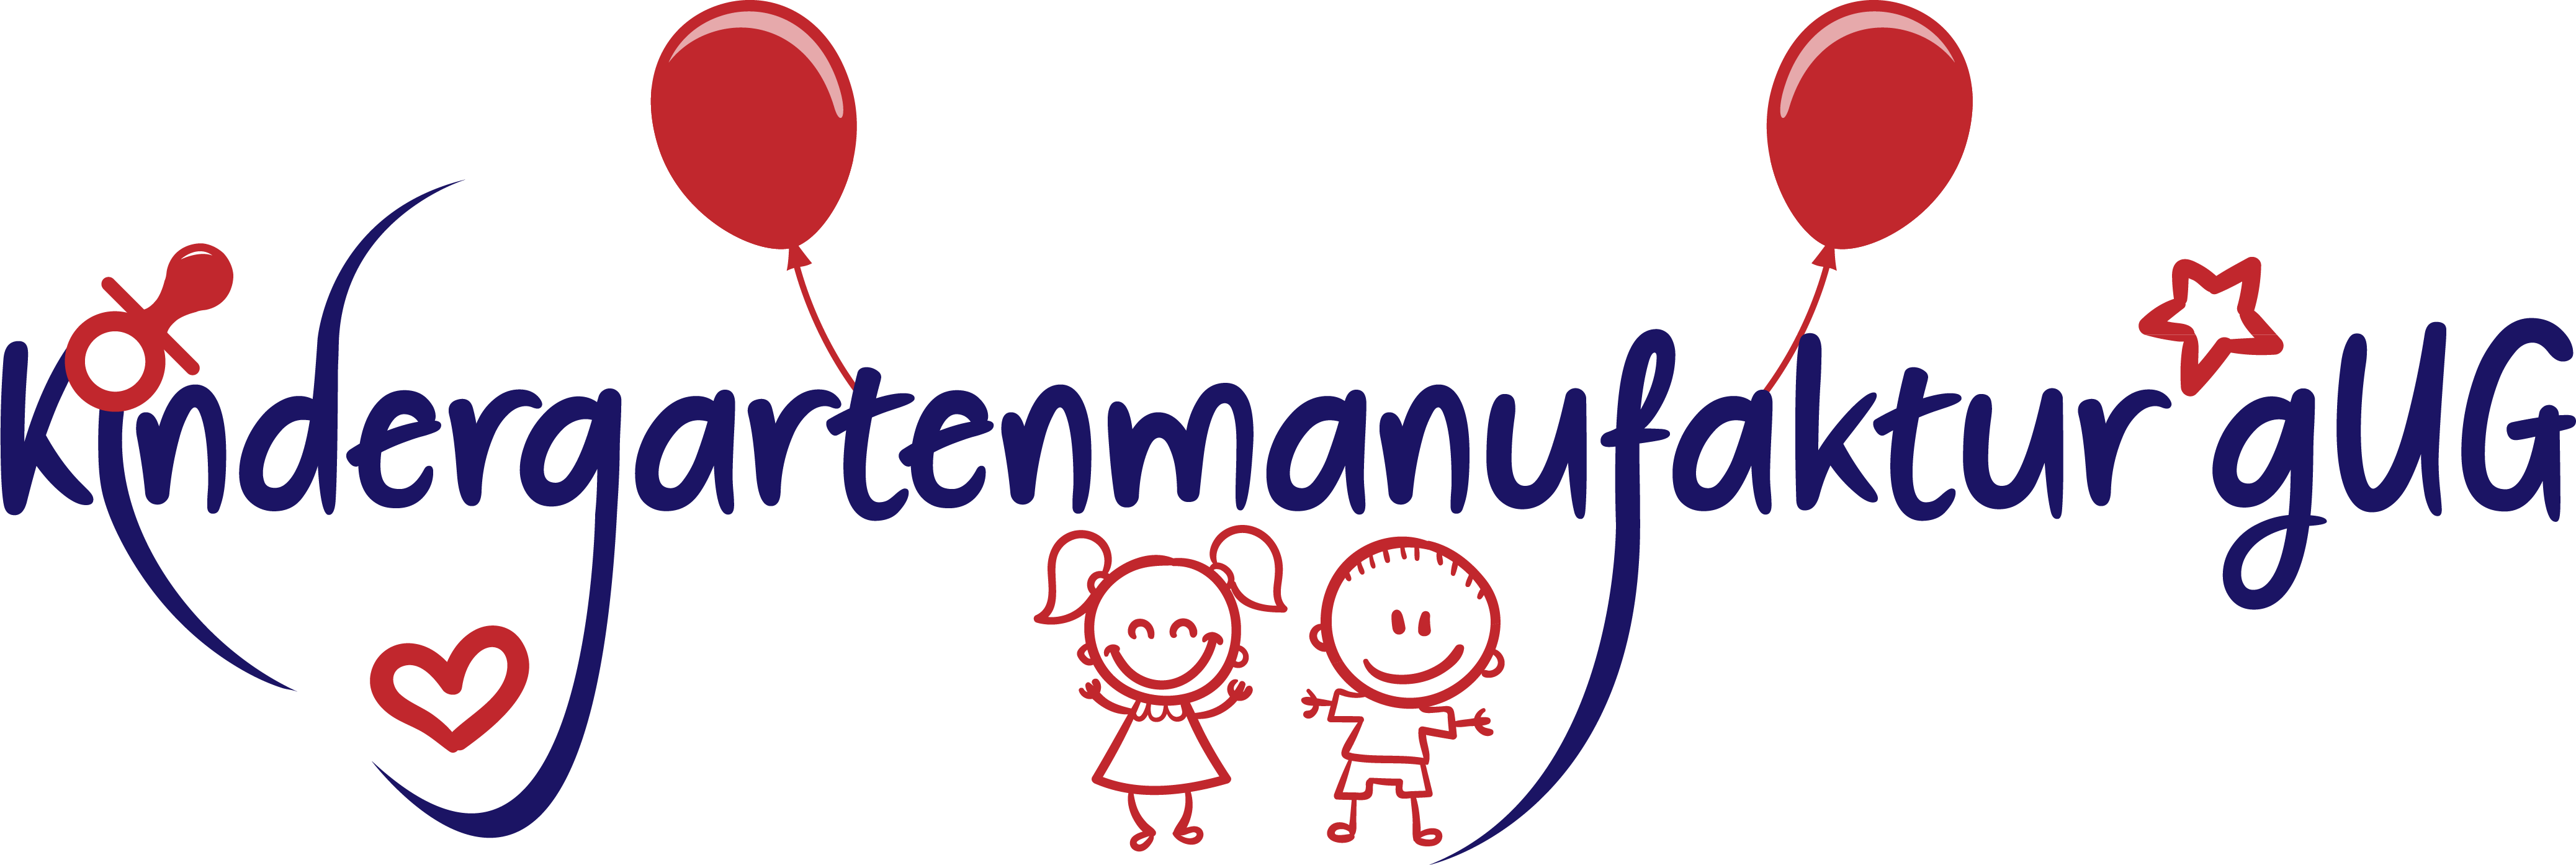 Kindergartenmanufaktur gemeinnützige UG - Martina Heimann